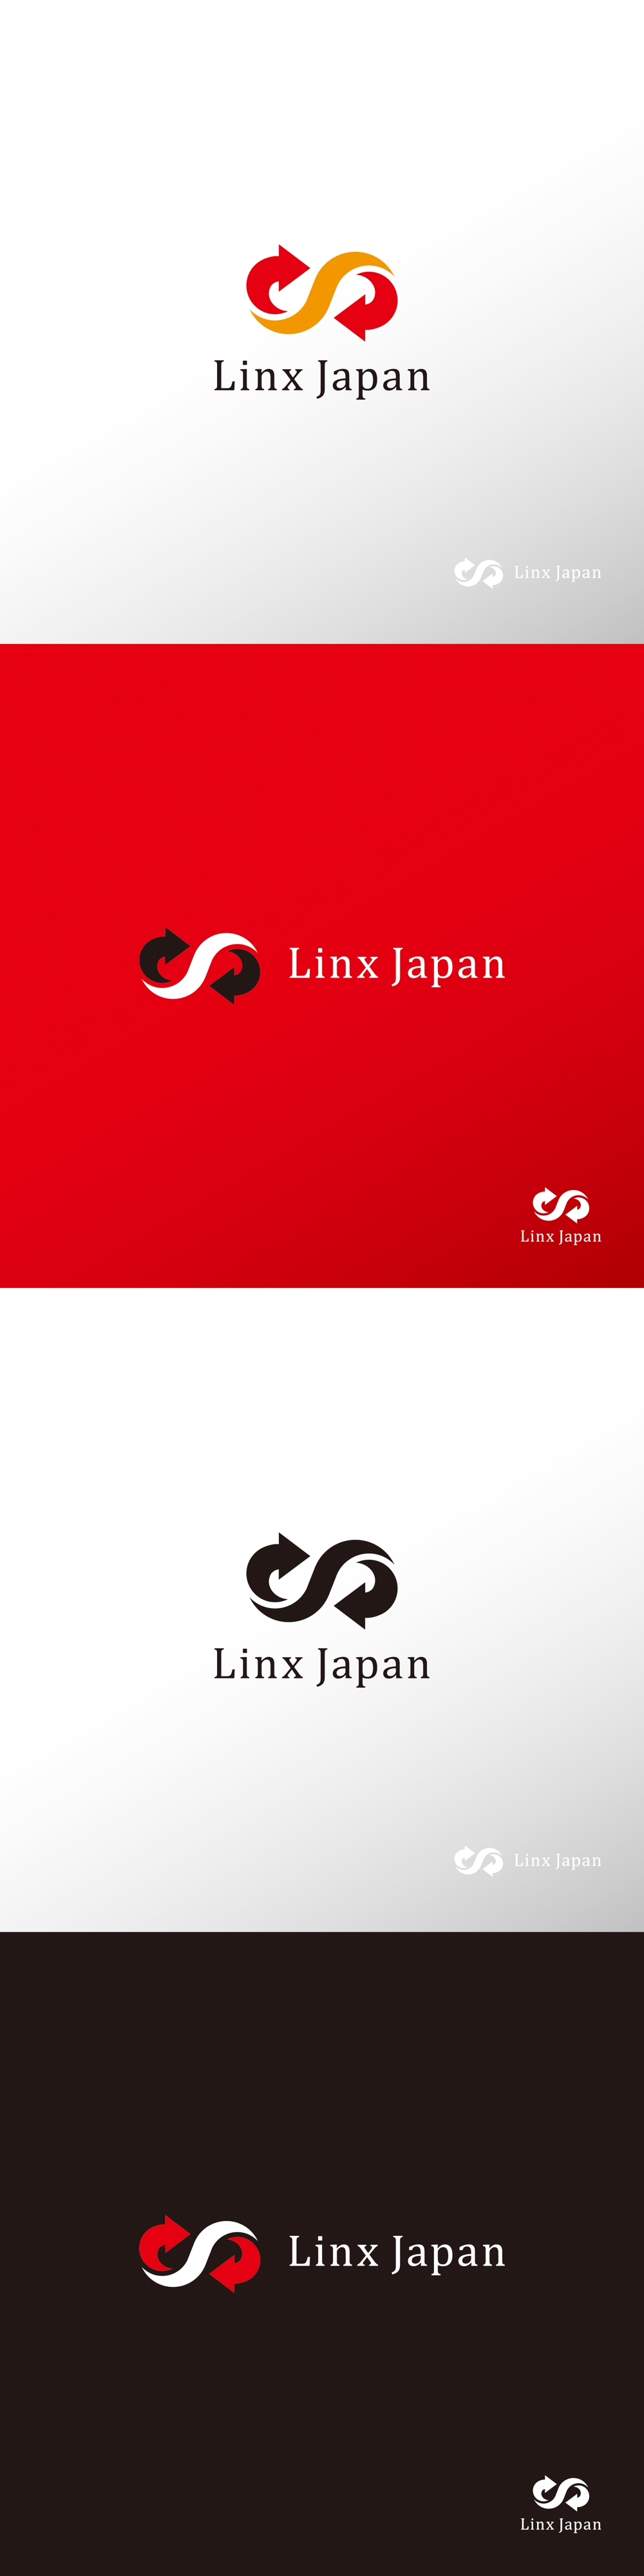 ファクタリング業_Linx Japan_ロゴA1.jpg